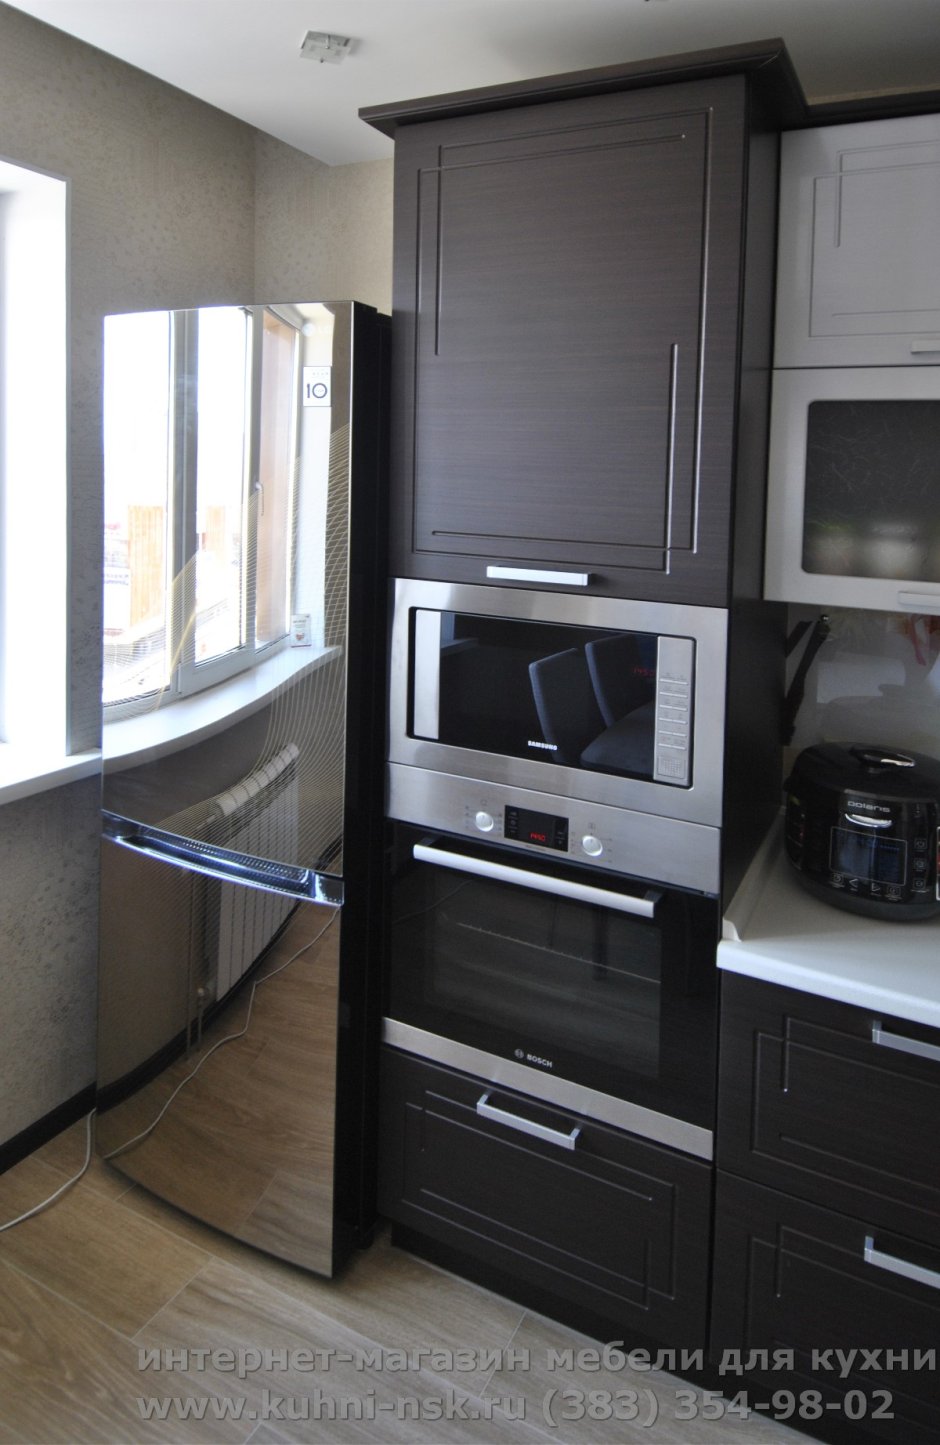 Кухонный гарнитур с двустворчатым холодильником